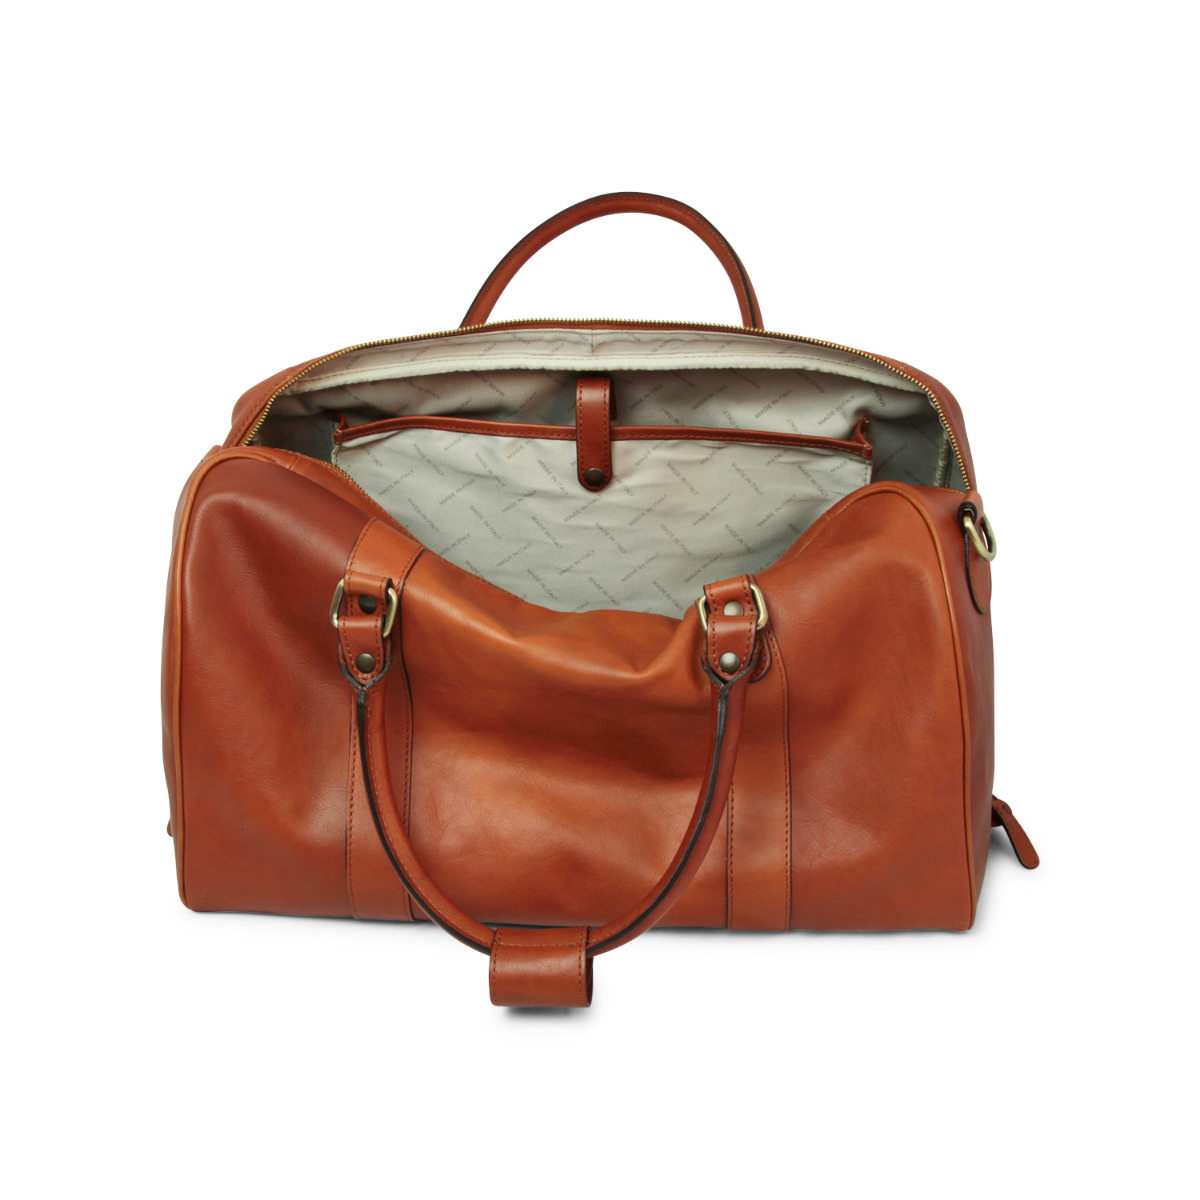 Full grain leather travel bag - gold|Full grain leather travel bag - gold|Old Angler Firenze